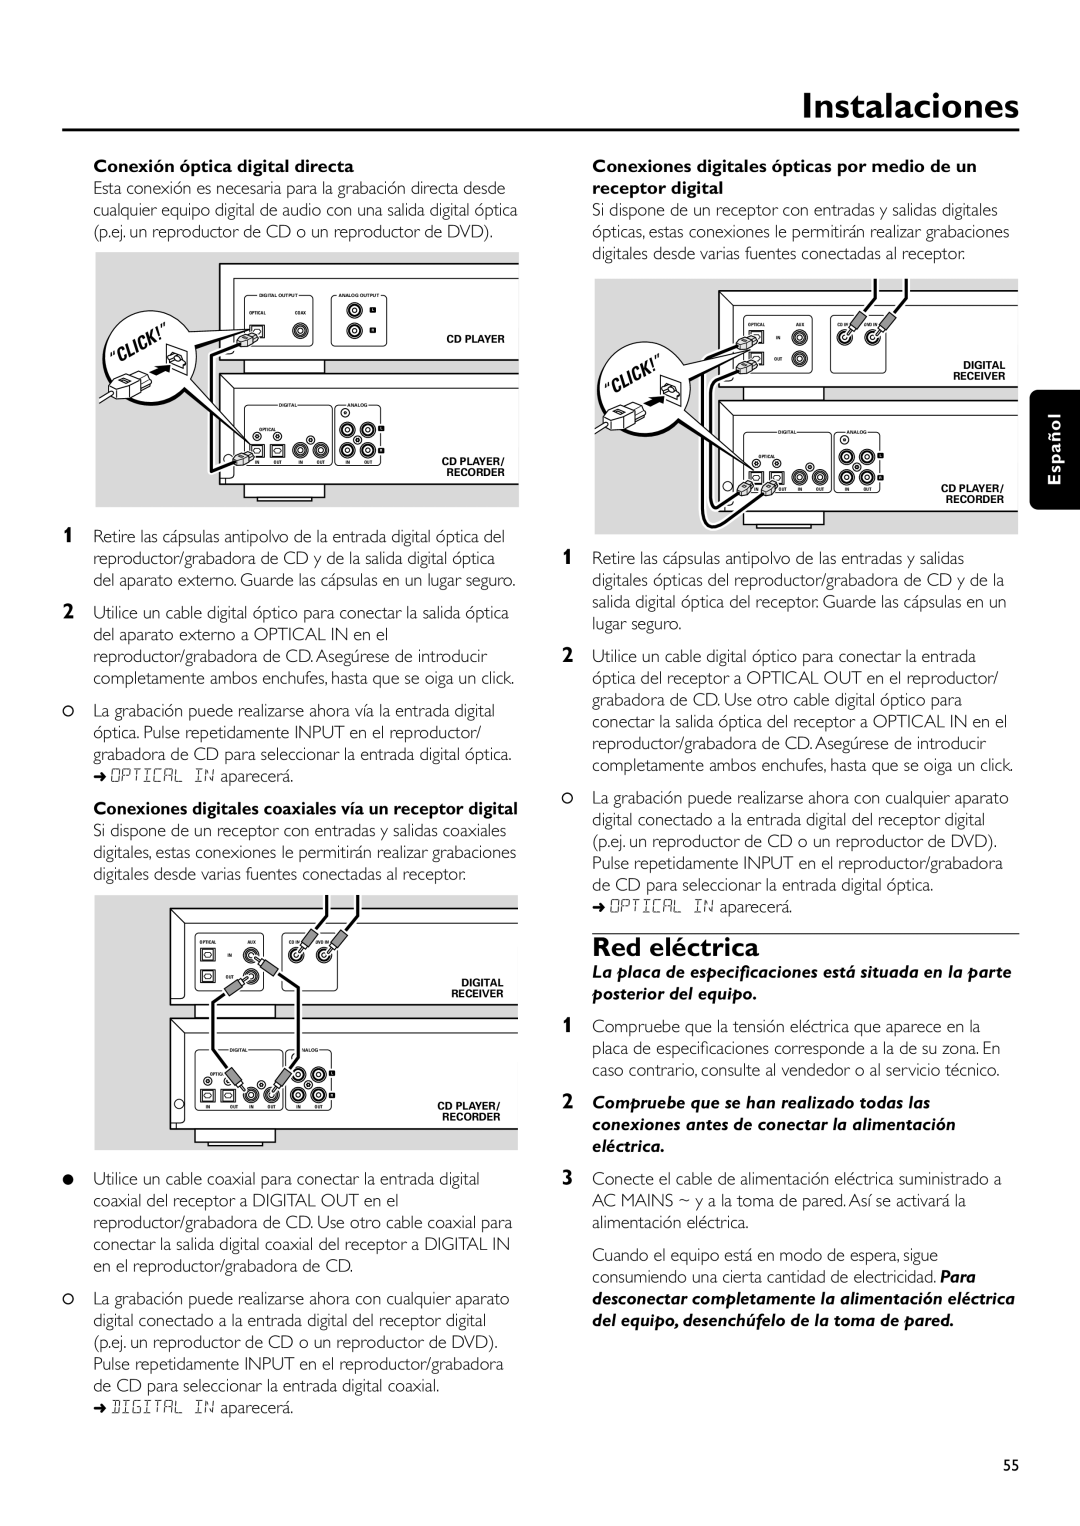 Philips CDR-795 manual Red eléctrica, Instalaciones, Conexión óptica digital directa, Click 